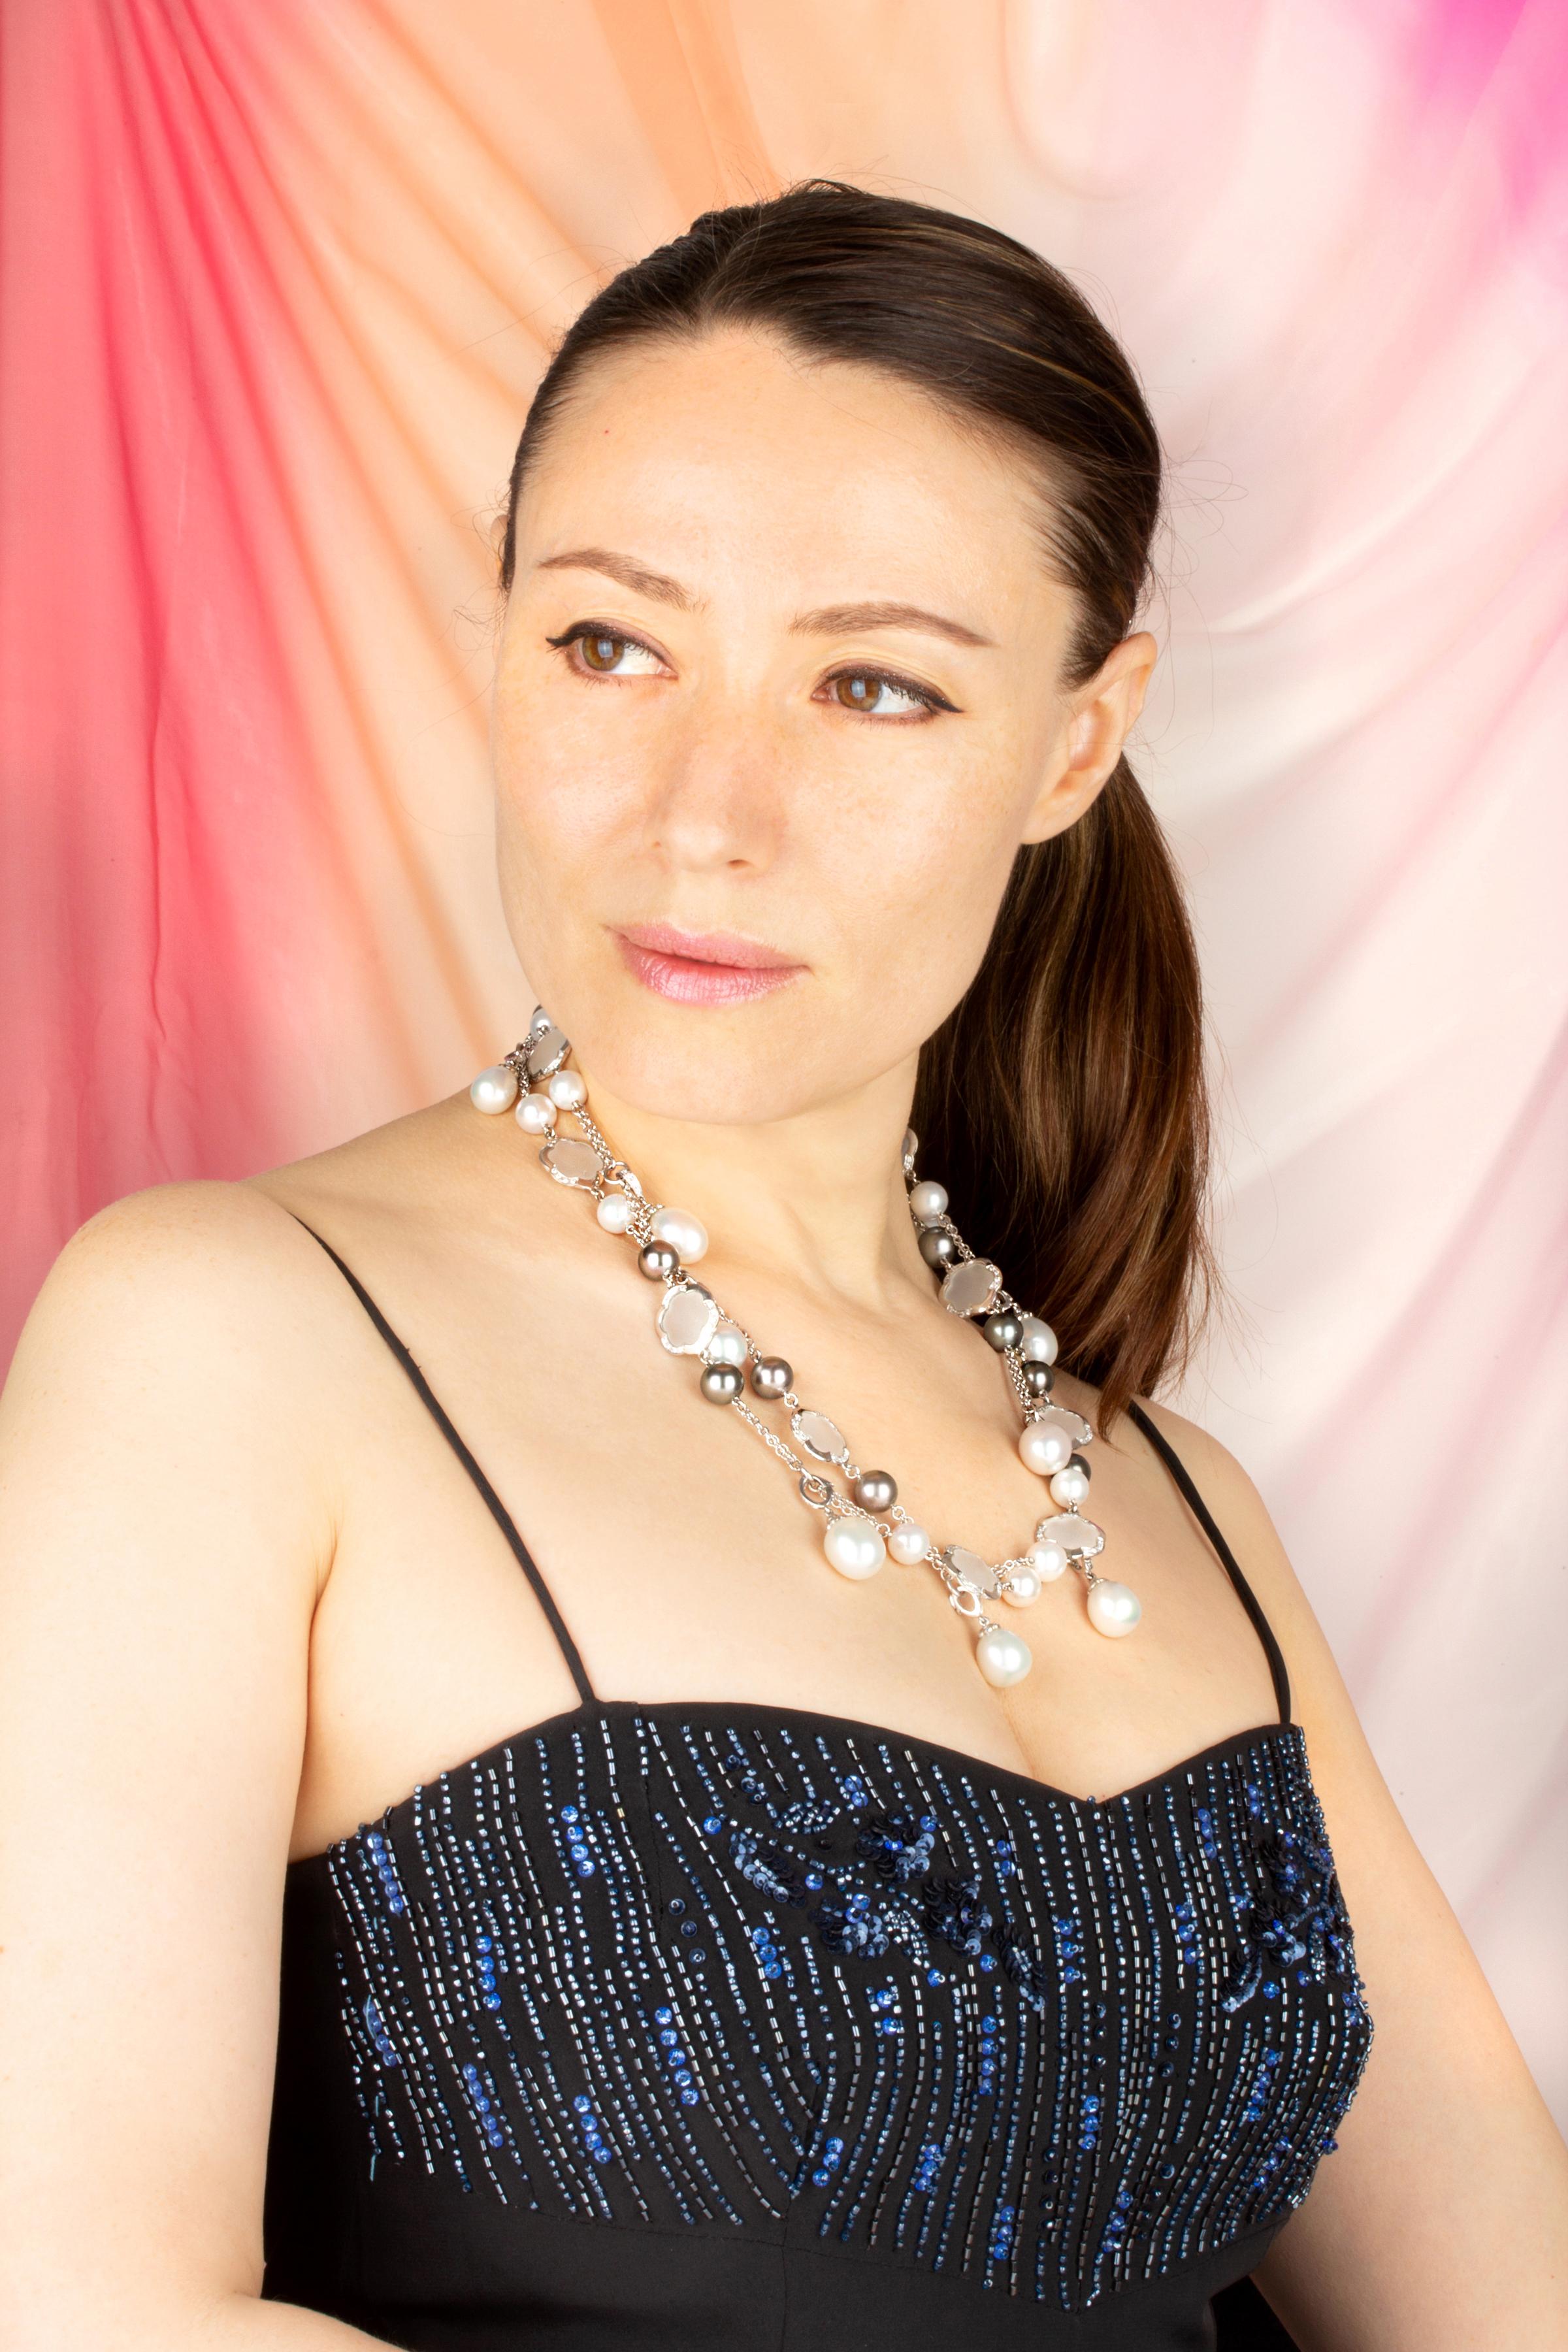 Die lange Halskette ist mit 10 Tahiti-Perlen und 12 japanischen Akoya-Perlen gestaltet. Goldblumen mit mattiertem Kristall und Diamanten sind in regelmäßigen Abständen entlang des Halsschmucks verteilt und verleihen dem Schmuckstück einen